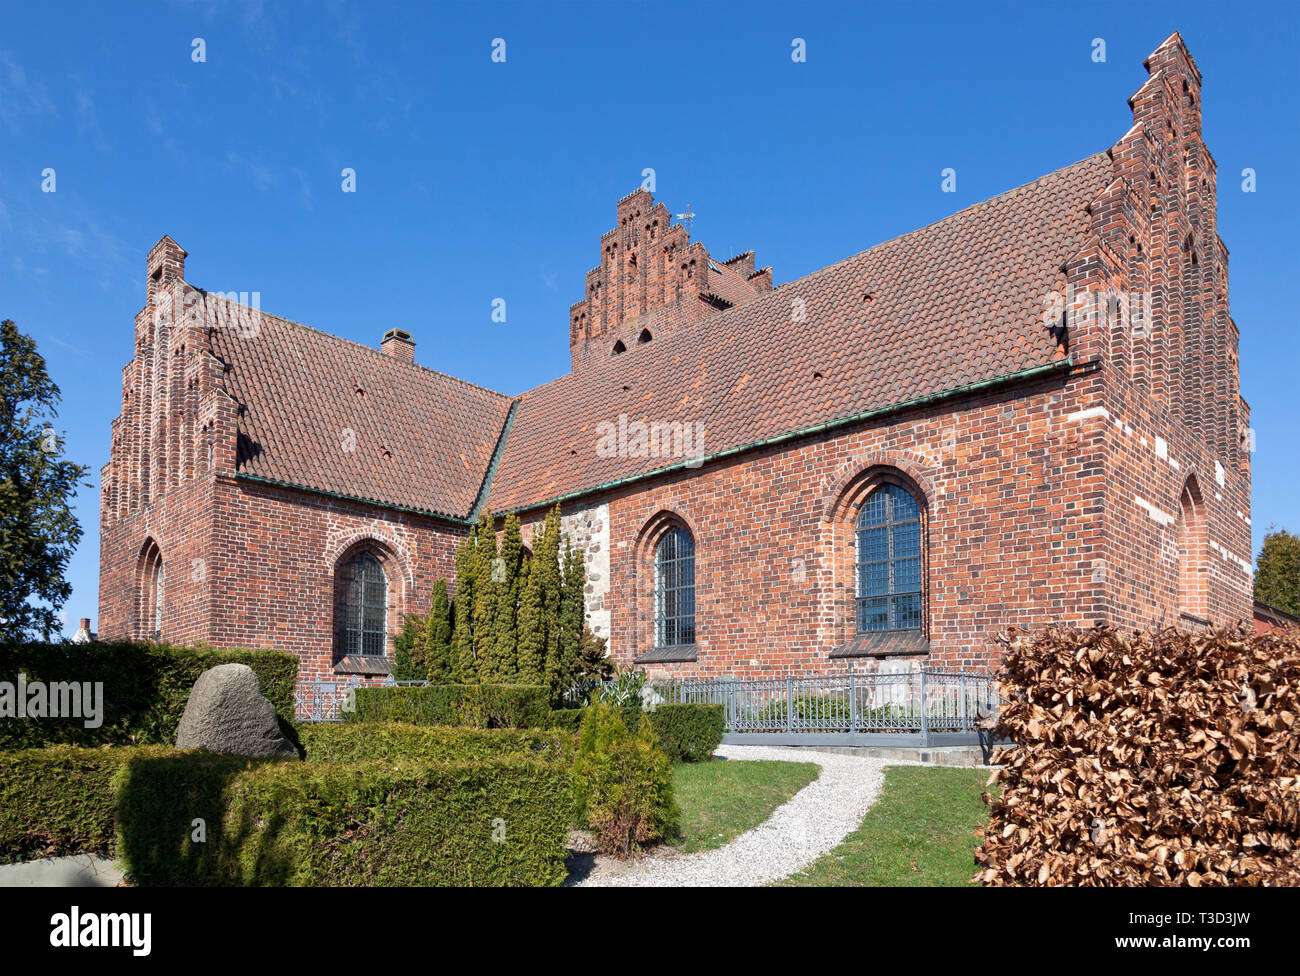 Lyngby chiesa in stile romanico originariamente a partire dalla metà del XII secolo. Allungato nel tardo gotico. Kongens Lyngby, un sobborgo a nord di Copenhagen. Foto Stock